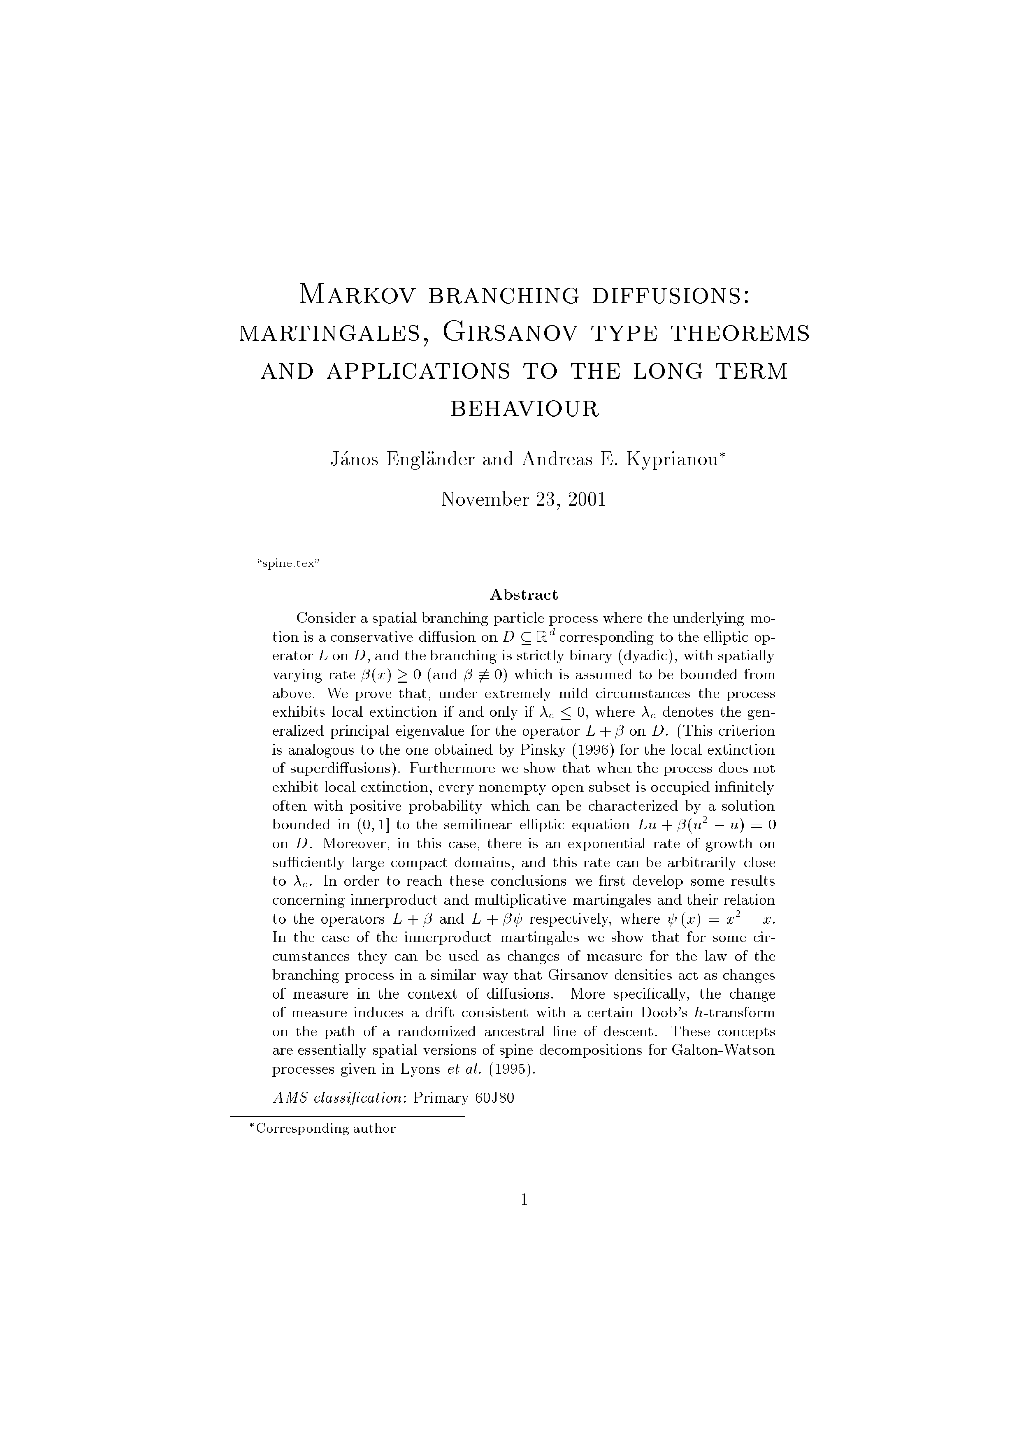 Markov Branching Diffusions: Martingales, Girsanov Type